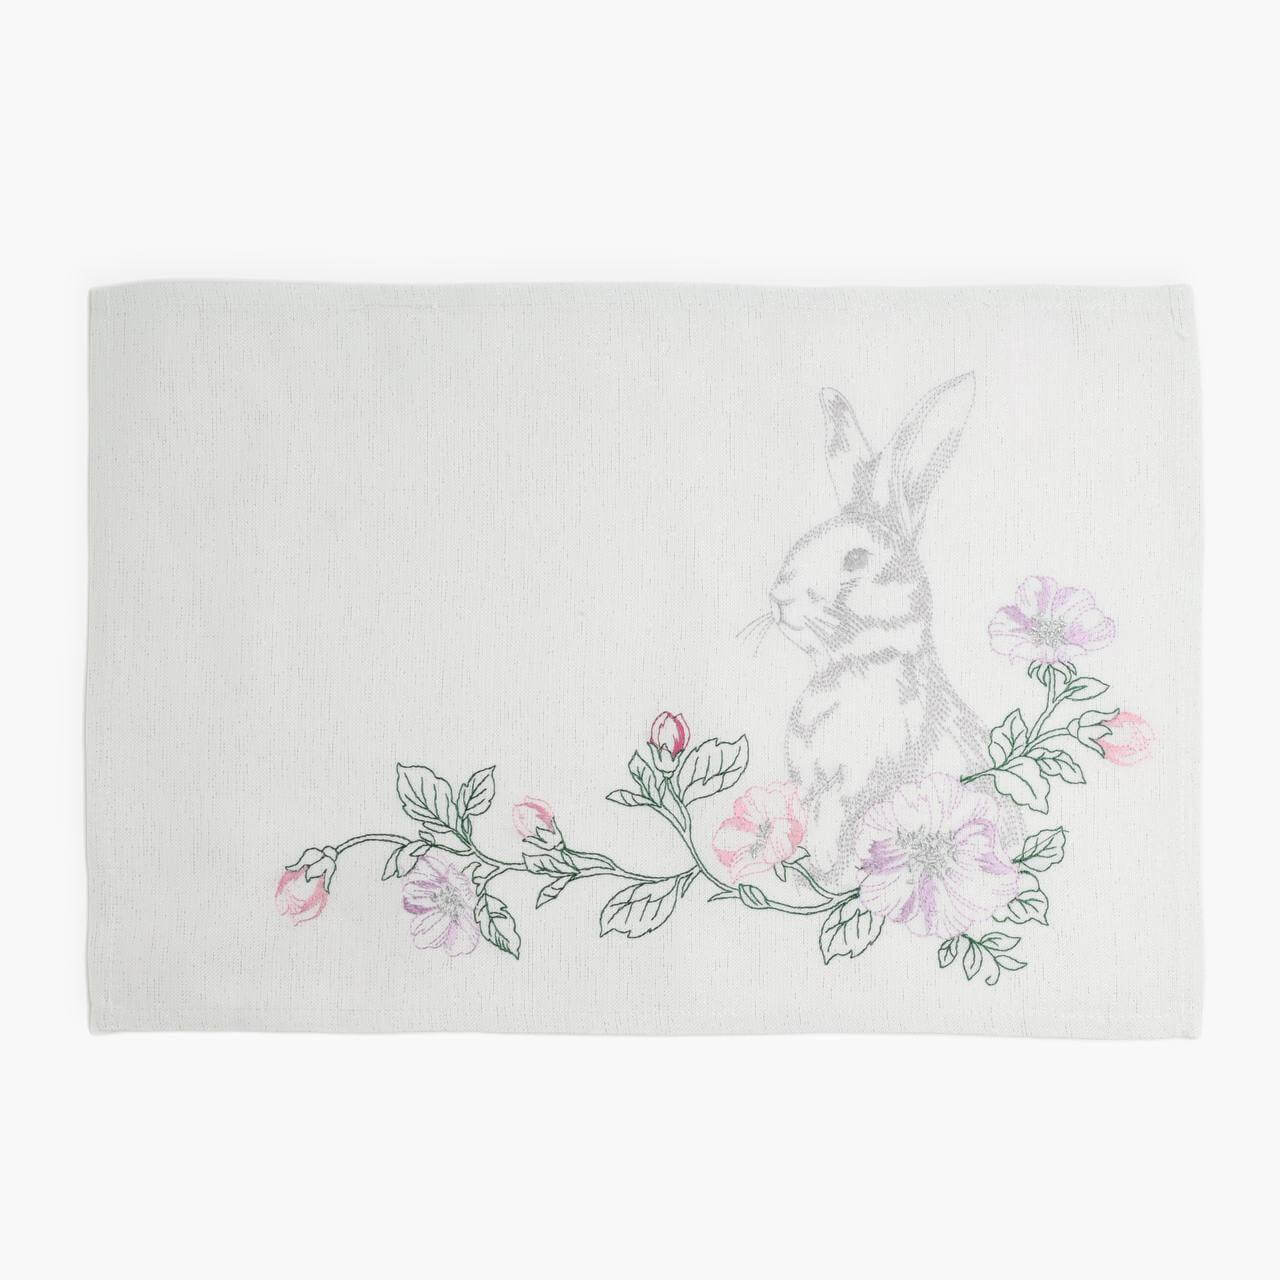 Салфетка под приборы, 30x45 см, полиэстер, прямоугольная, белая, Кролик в цветах, Pure Easter салфетка микрофибра ladina